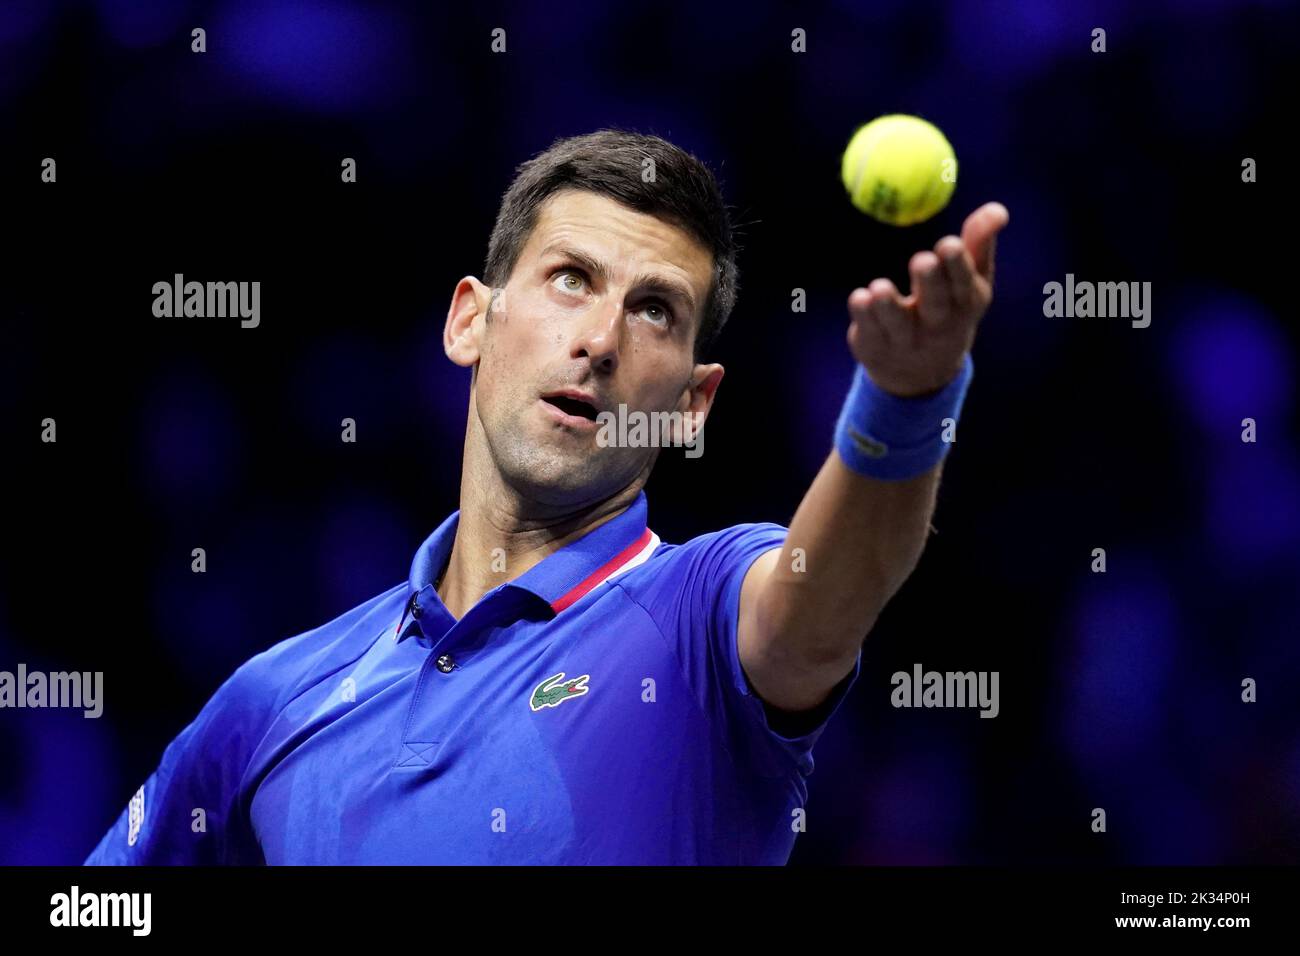 Novak Djokovic durante su partido contra Frances Tiafoe en el segundo día de la Copa Laver en el O2 Arena, Londres. Fecha de la foto: Sábado 24 de septiembre de 2022. Foto de stock